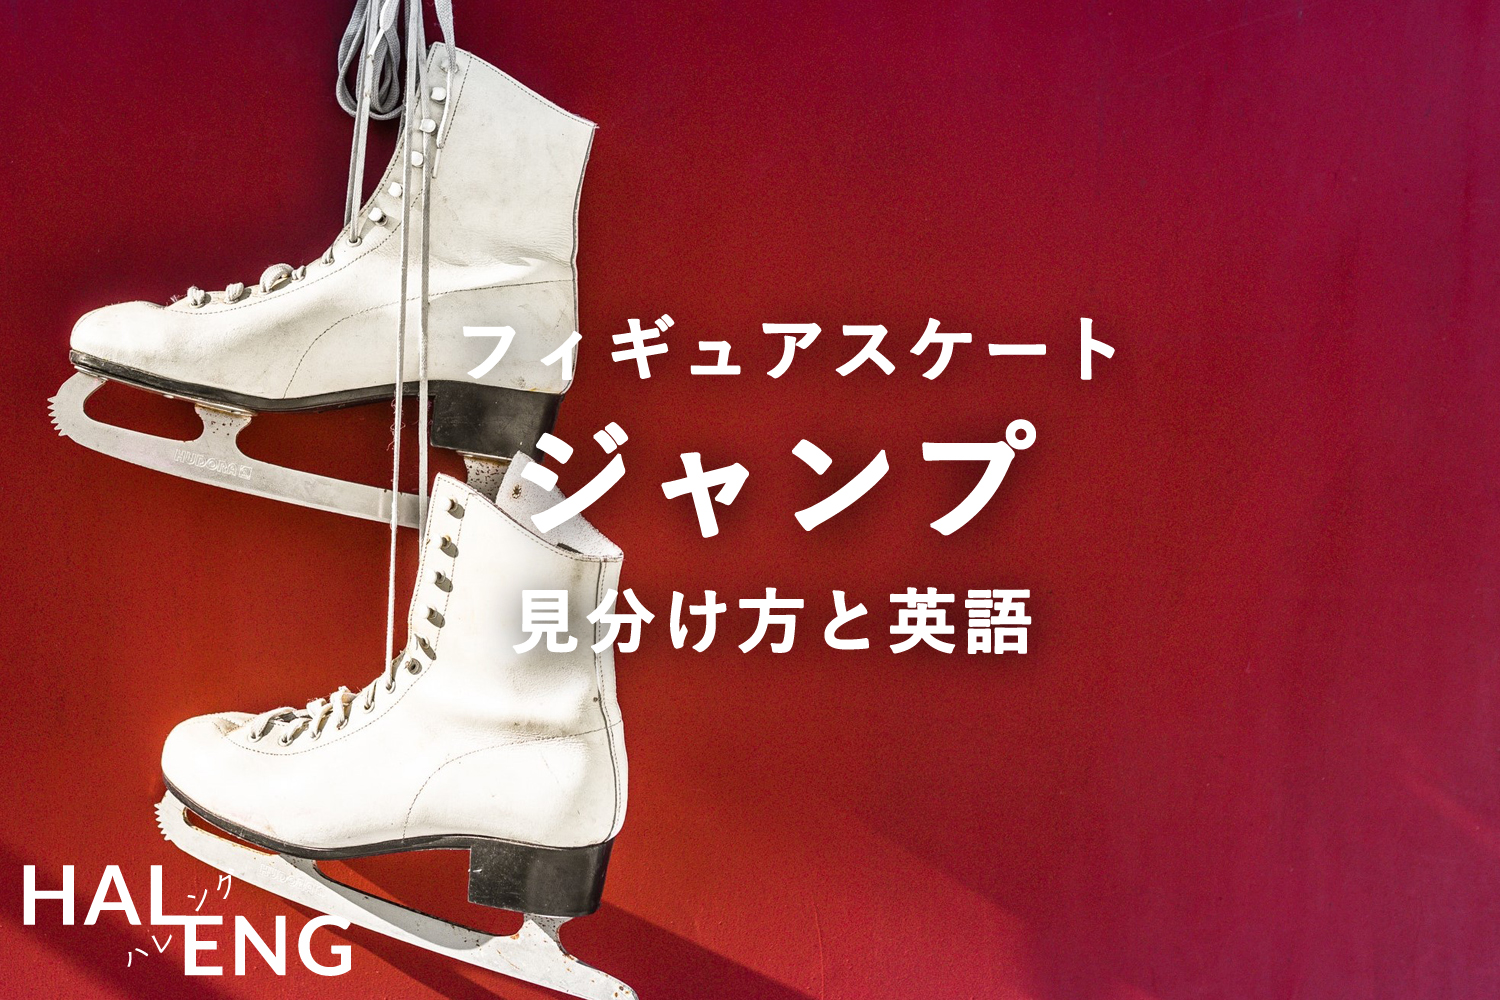 フィギュアスケート ジャンプの種類 英語 経験者のシンプル解説 Haleng ハレング